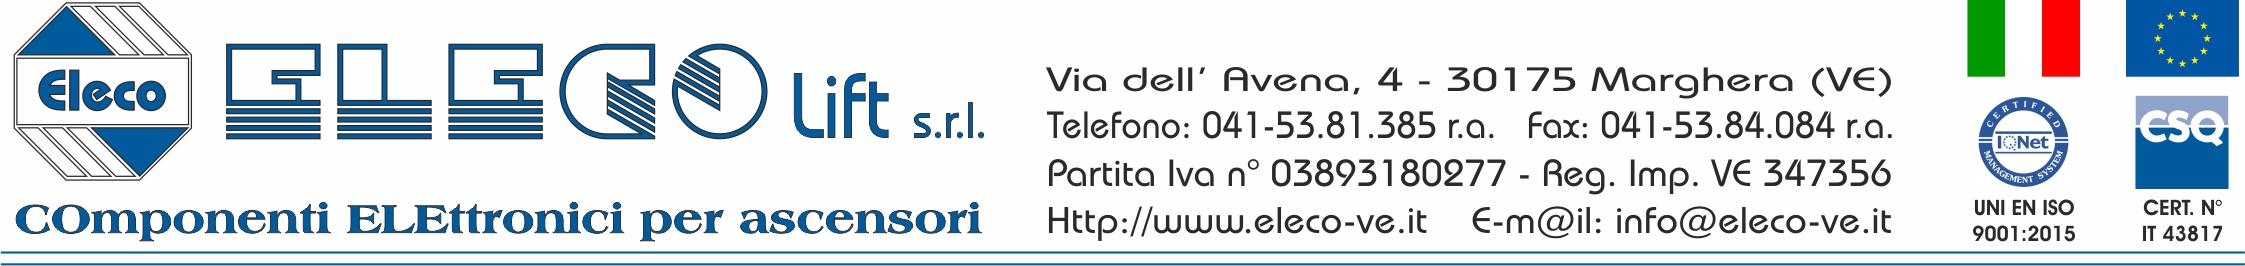 Eleco lift srl - Via dell'Avena 4, 30175 Marghera (VE), Tel. 041 - 53.81.385, Fax: 041 - 53.84.084, e-mail: info@eleco-ve.it